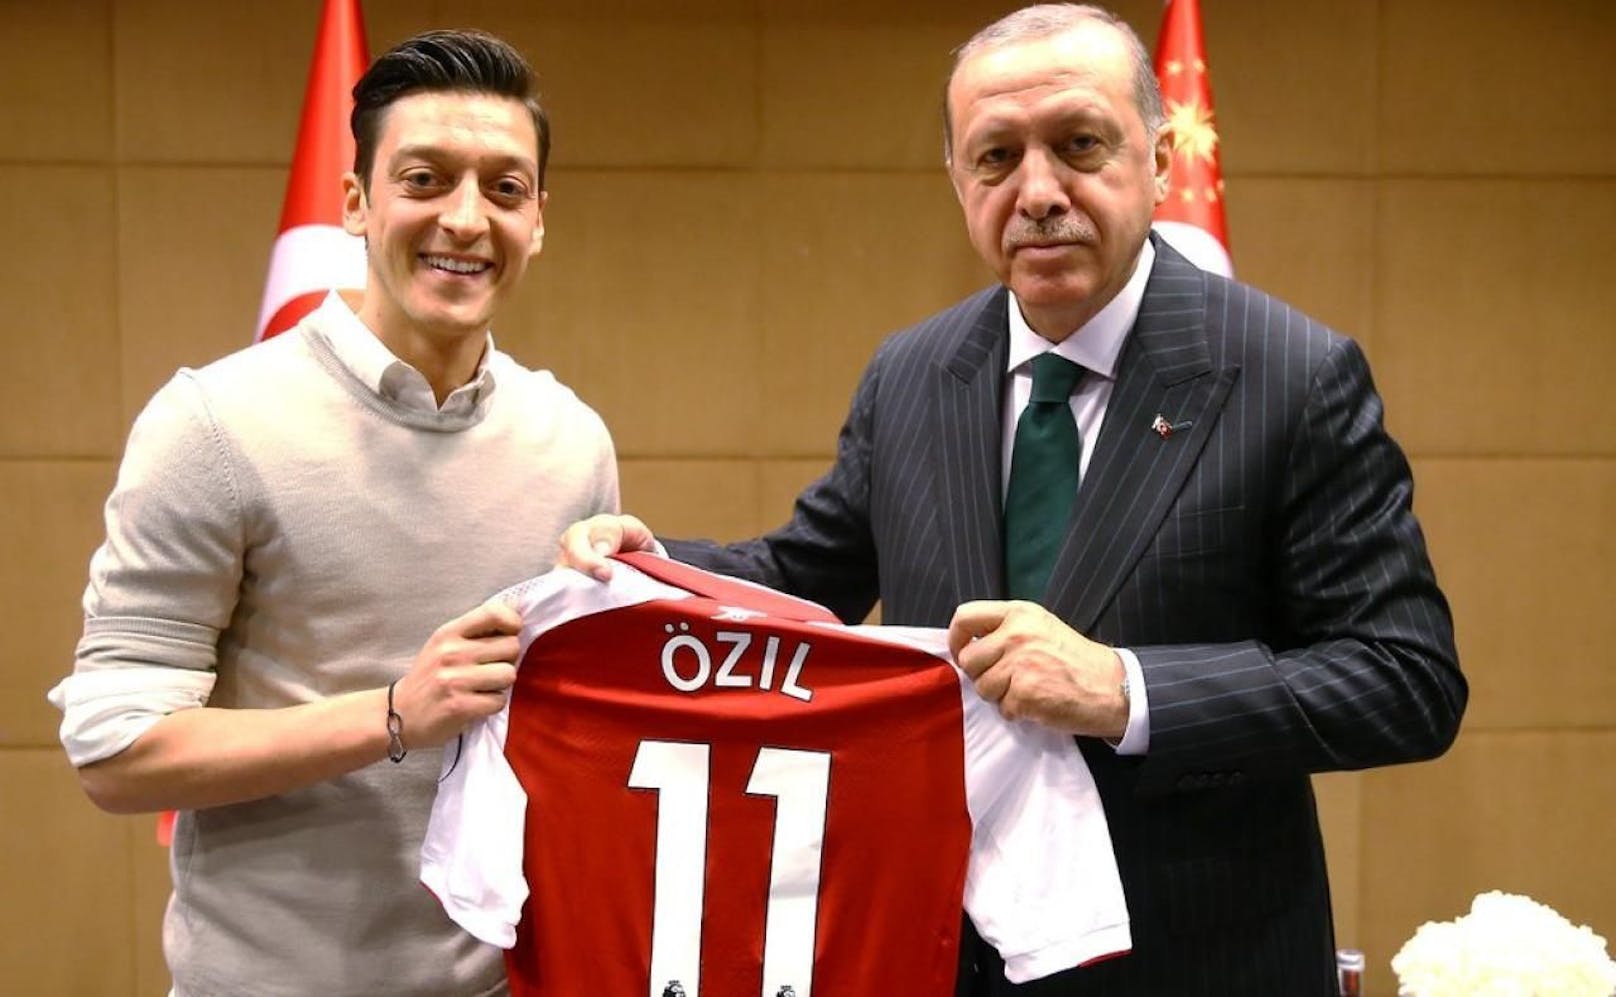 2018 schenkte Özil Erdogan ein Geschenk, nun erhielt er eine Uhr.